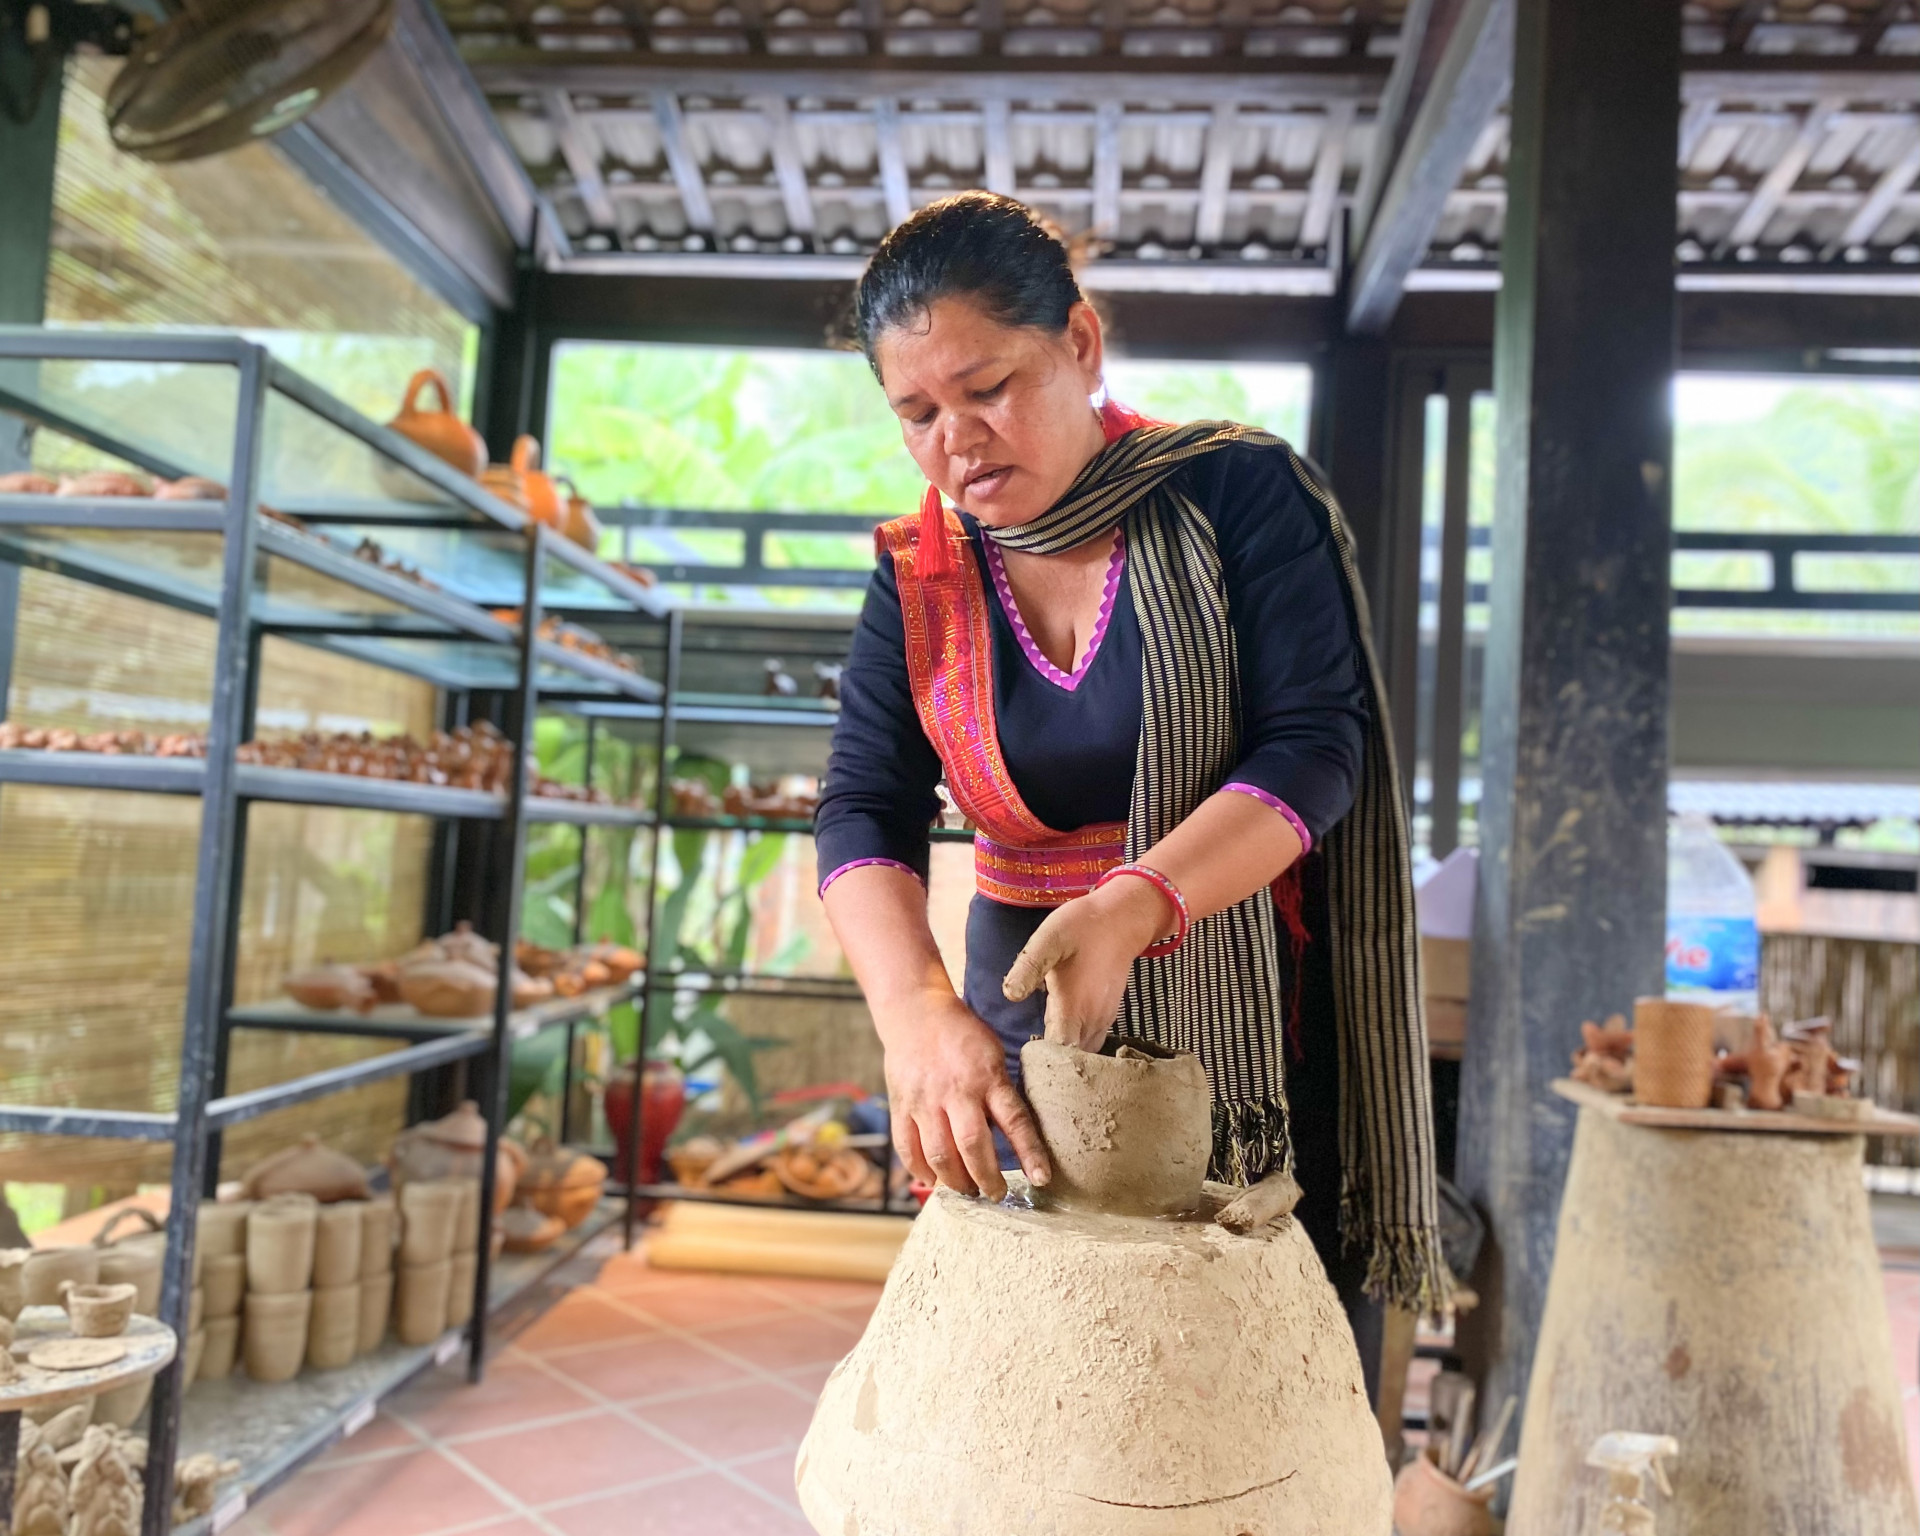 Với chị Nao, dù làm việc xa qua hương nhưng chị luôn cảm thấy tự hào khi được sinh ra và lớn lên tại Làng nghề gốm Bàu Trúc.